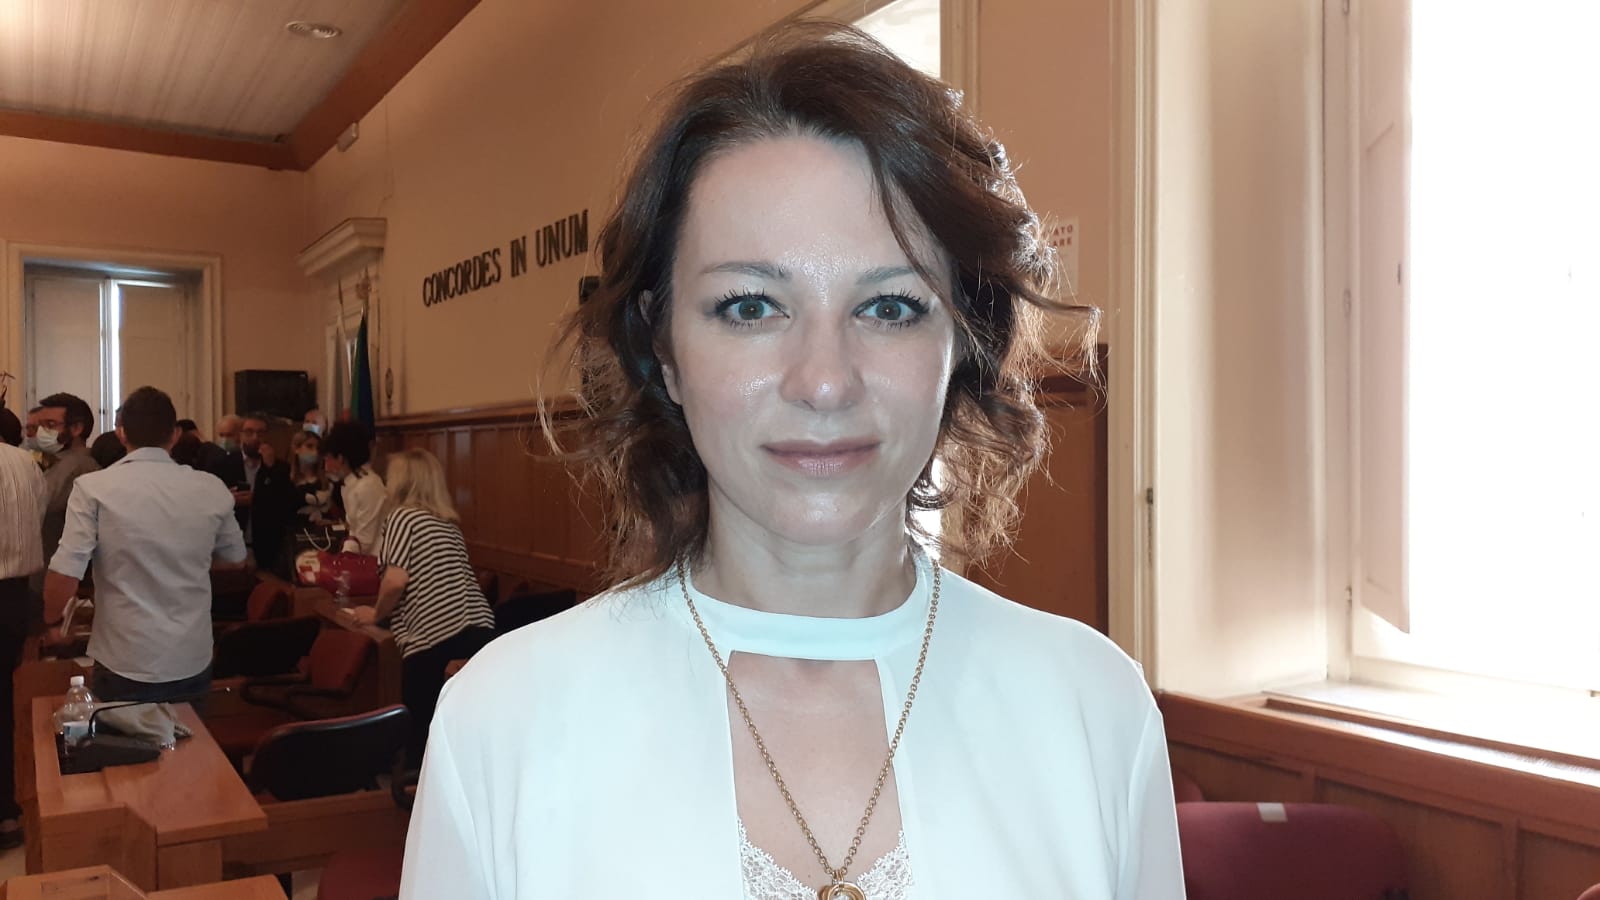 Benevento| Comune, Anna Rita Russo intenzionata ad uscire dal Patto Civico: ho accolto richiesta del partito Forza Italia